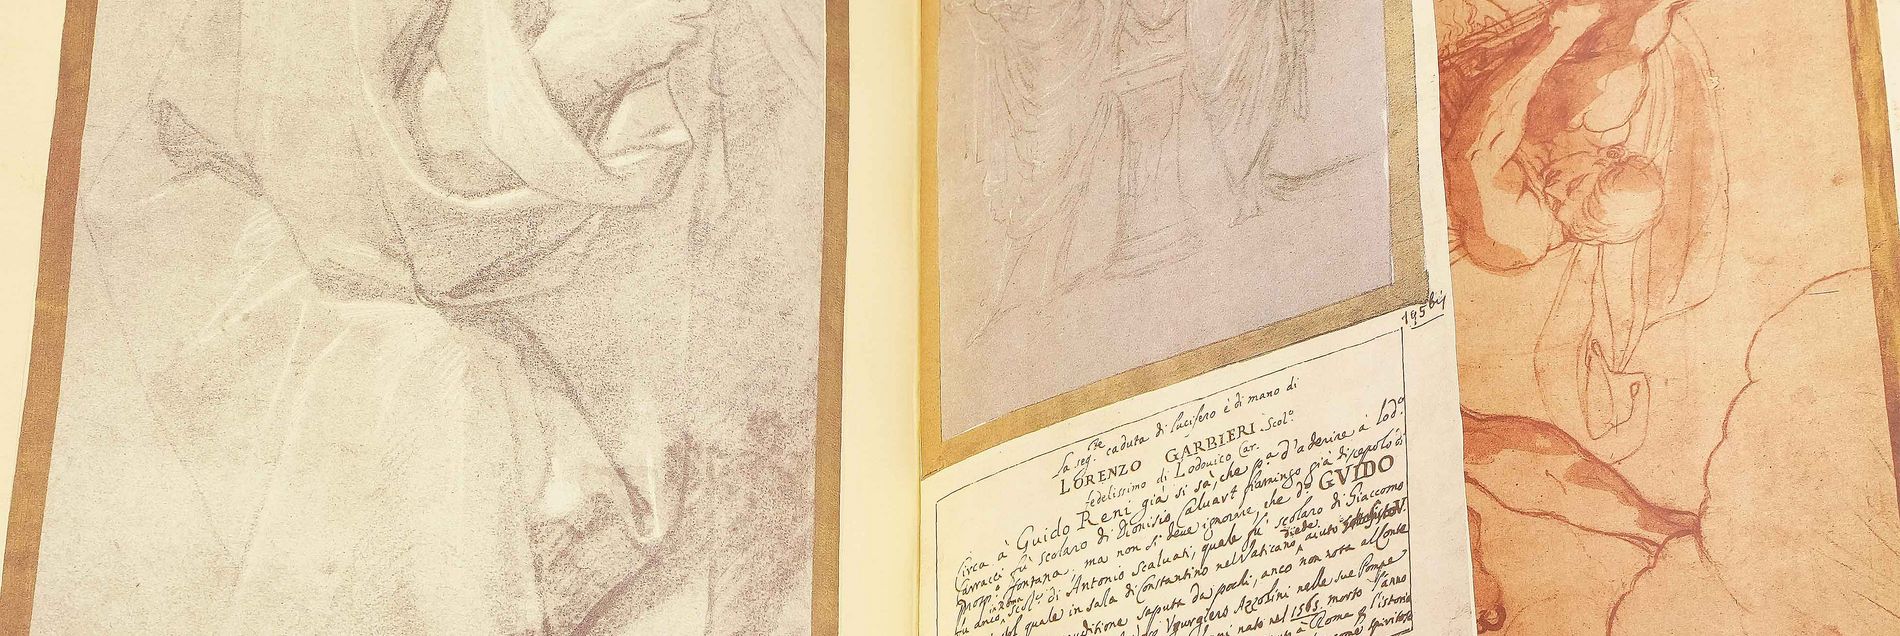 <i>„Ein Album mit Werken von Giotto bis Raffael, von Leonardo da Vinci bis Botticelli“</i>